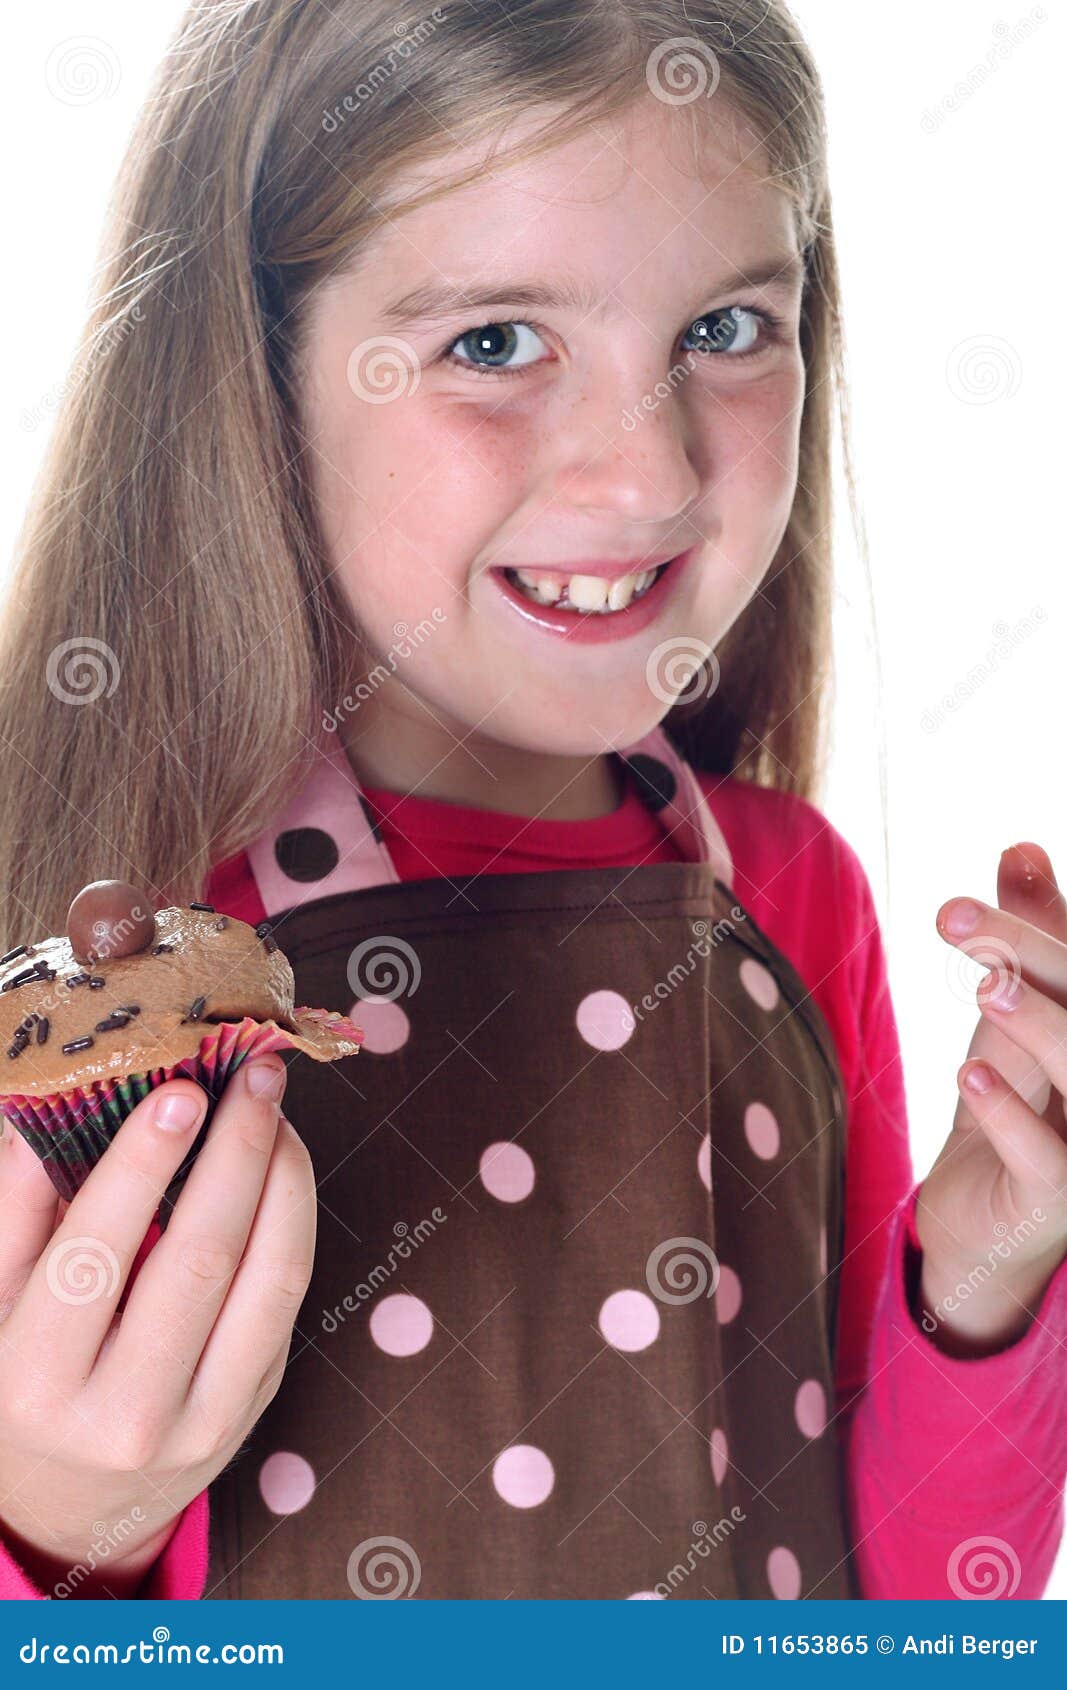 美丽的巧克力女孩纵向 库存照片. 图片 包括有 人员, 白种人, 有吸引力的, 人力, 美食, 设计, 纵向 - 12995578